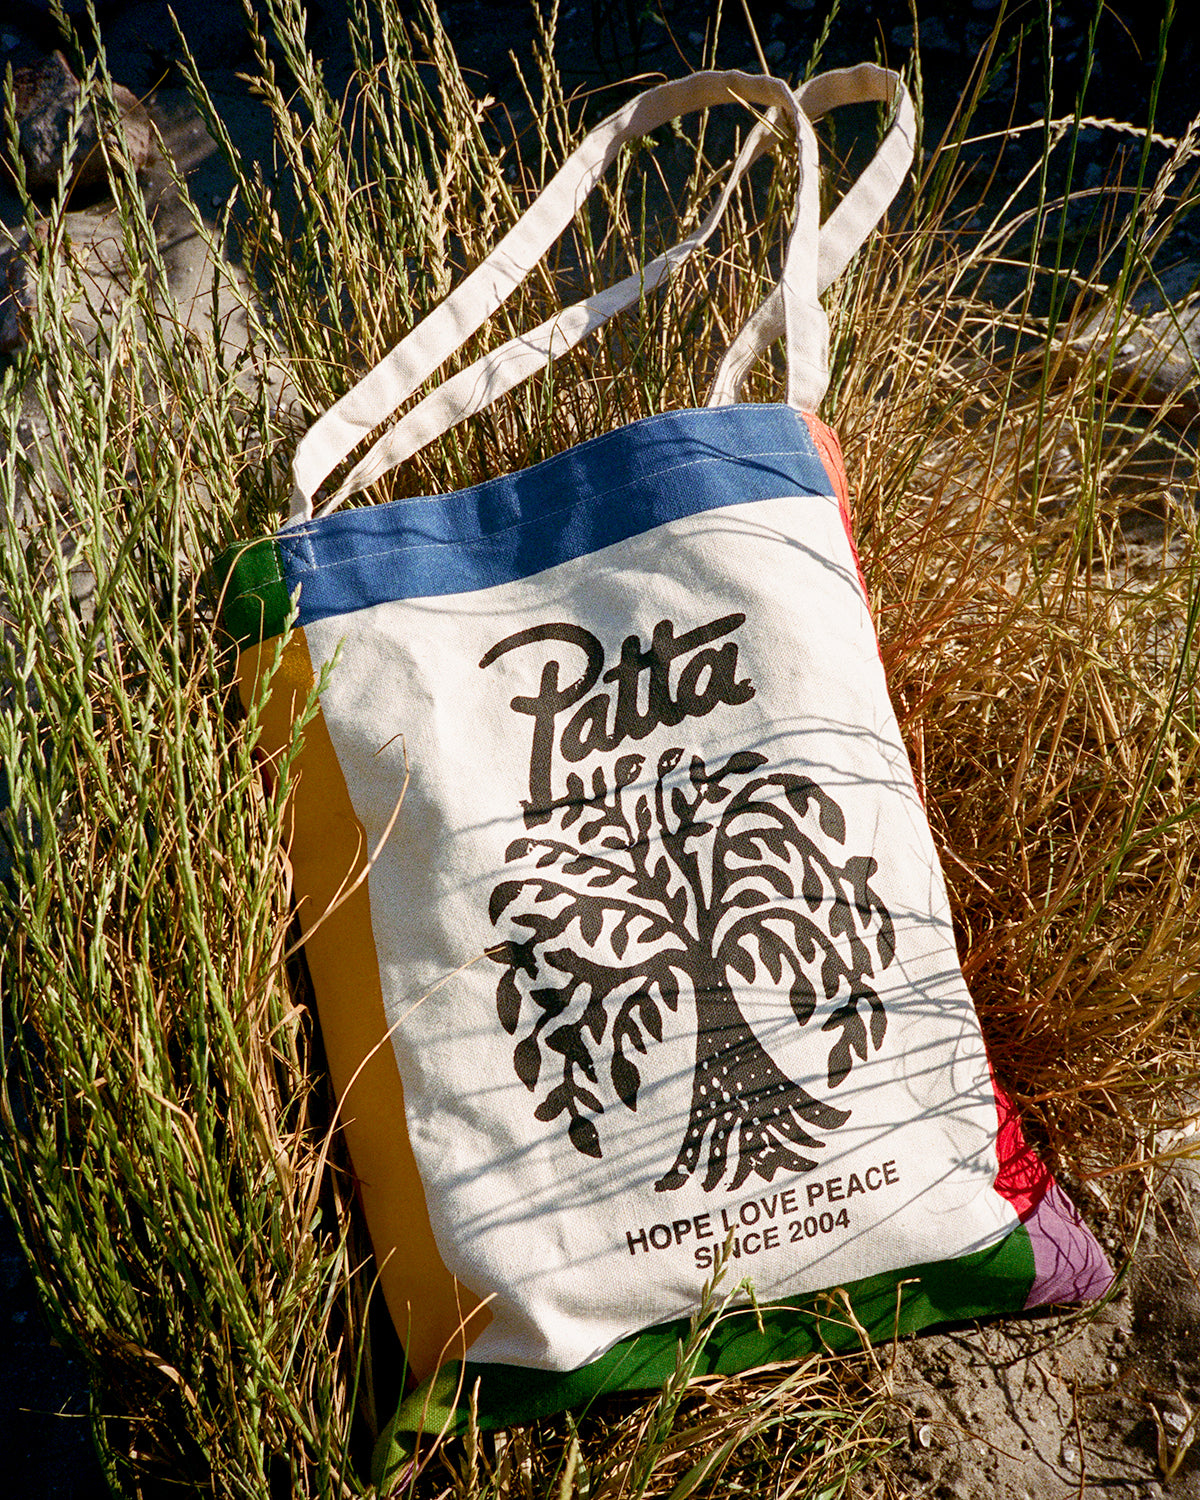 Patta Tree Of Life Tote Bag (Natural)